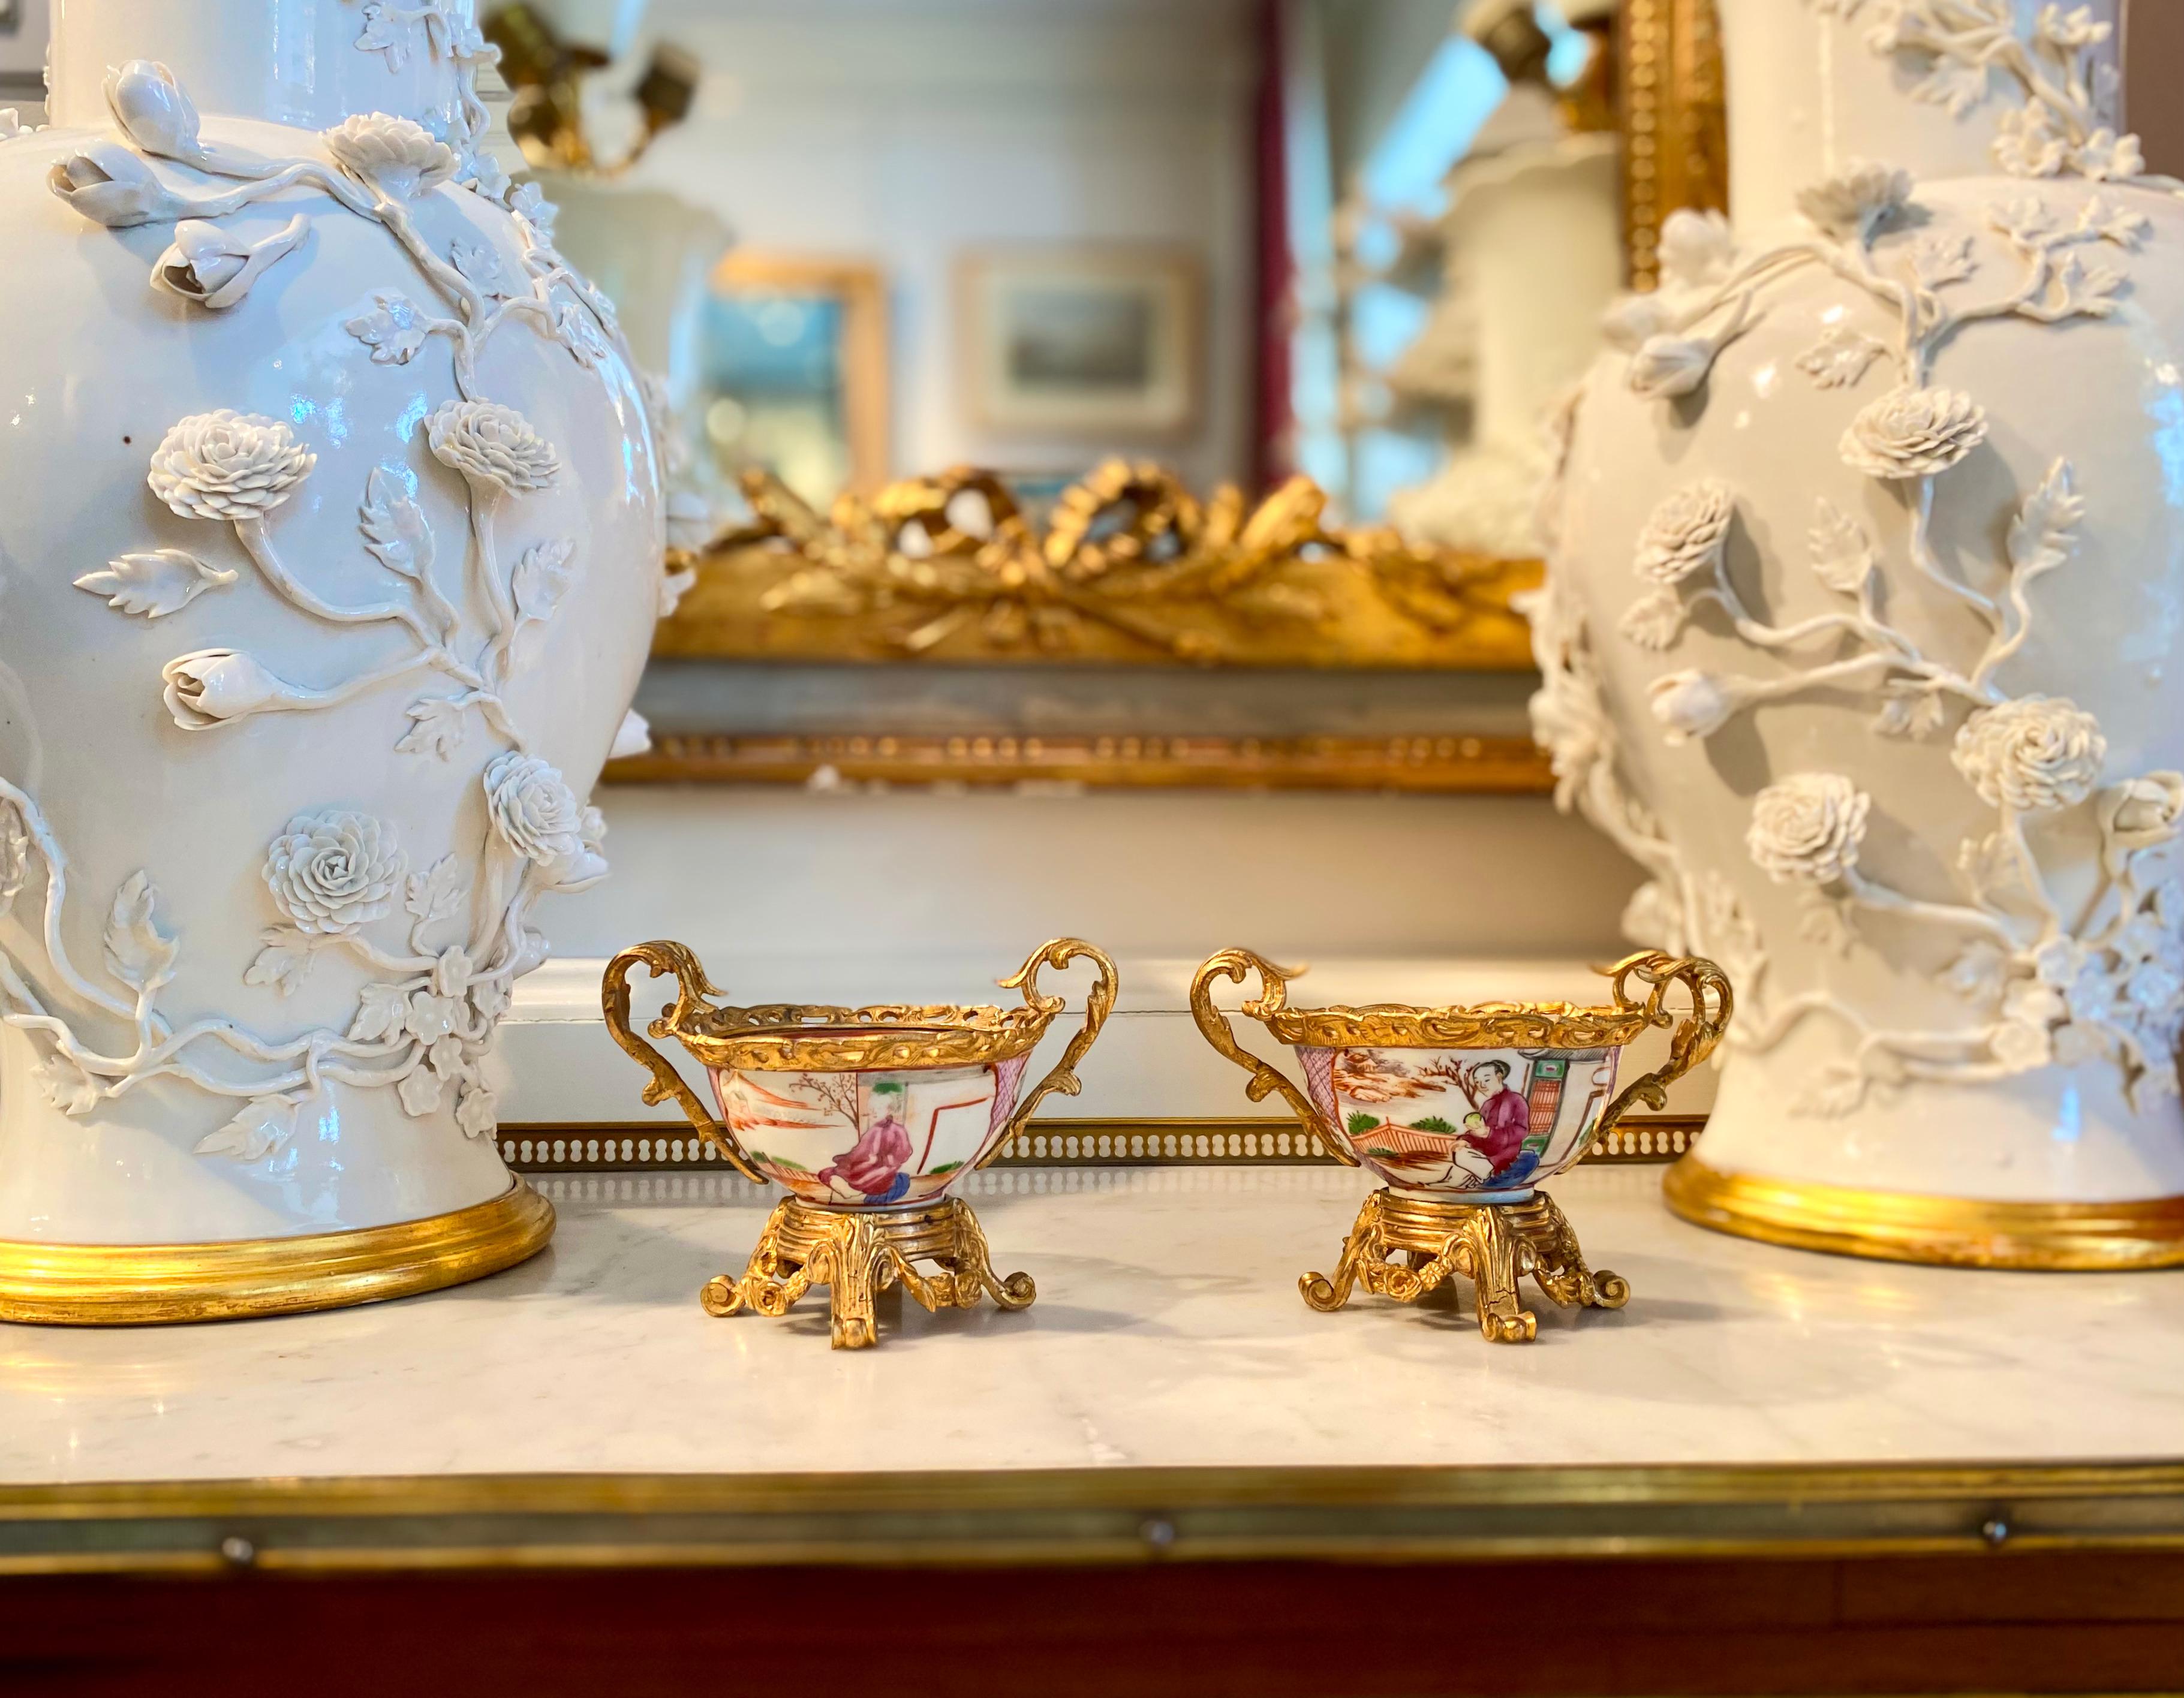 Paire de tasses à thé chinoises montées en bronze doré, Louis XV, XVIIIe siècle. À une époque où la France était éprise de tout ce qui était oriental, la porcelaine chinoise fine était souvent montée dans du bronze doré, et les récipients décoratifs